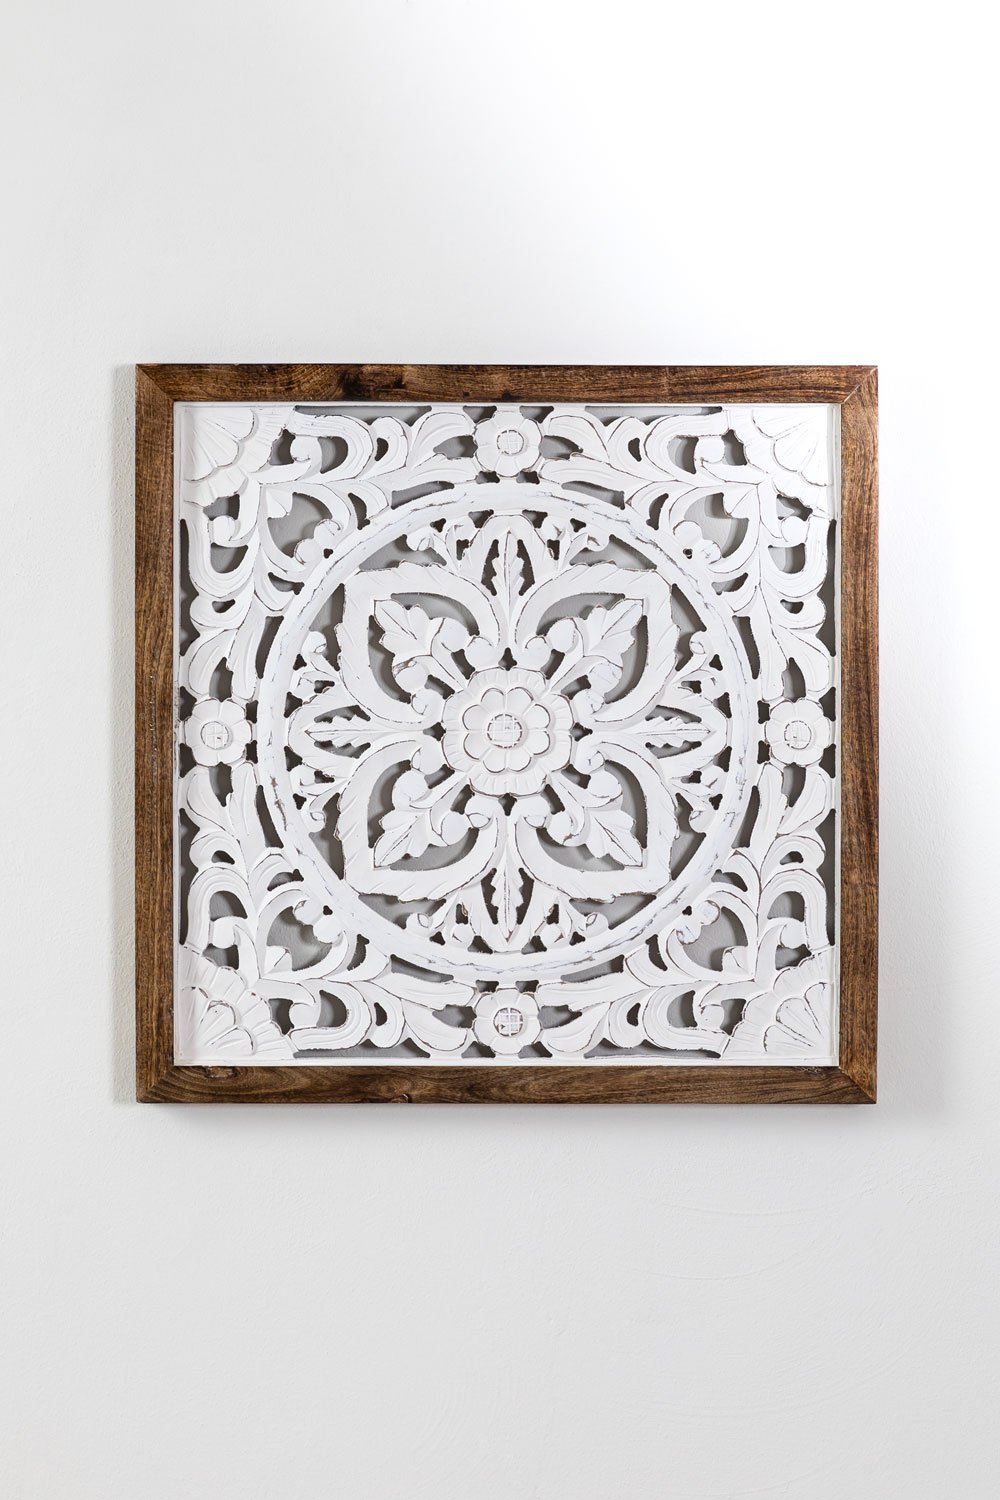 Decoratief paneel in hout (64x66 cm) Narmadas, galerij beeld 1